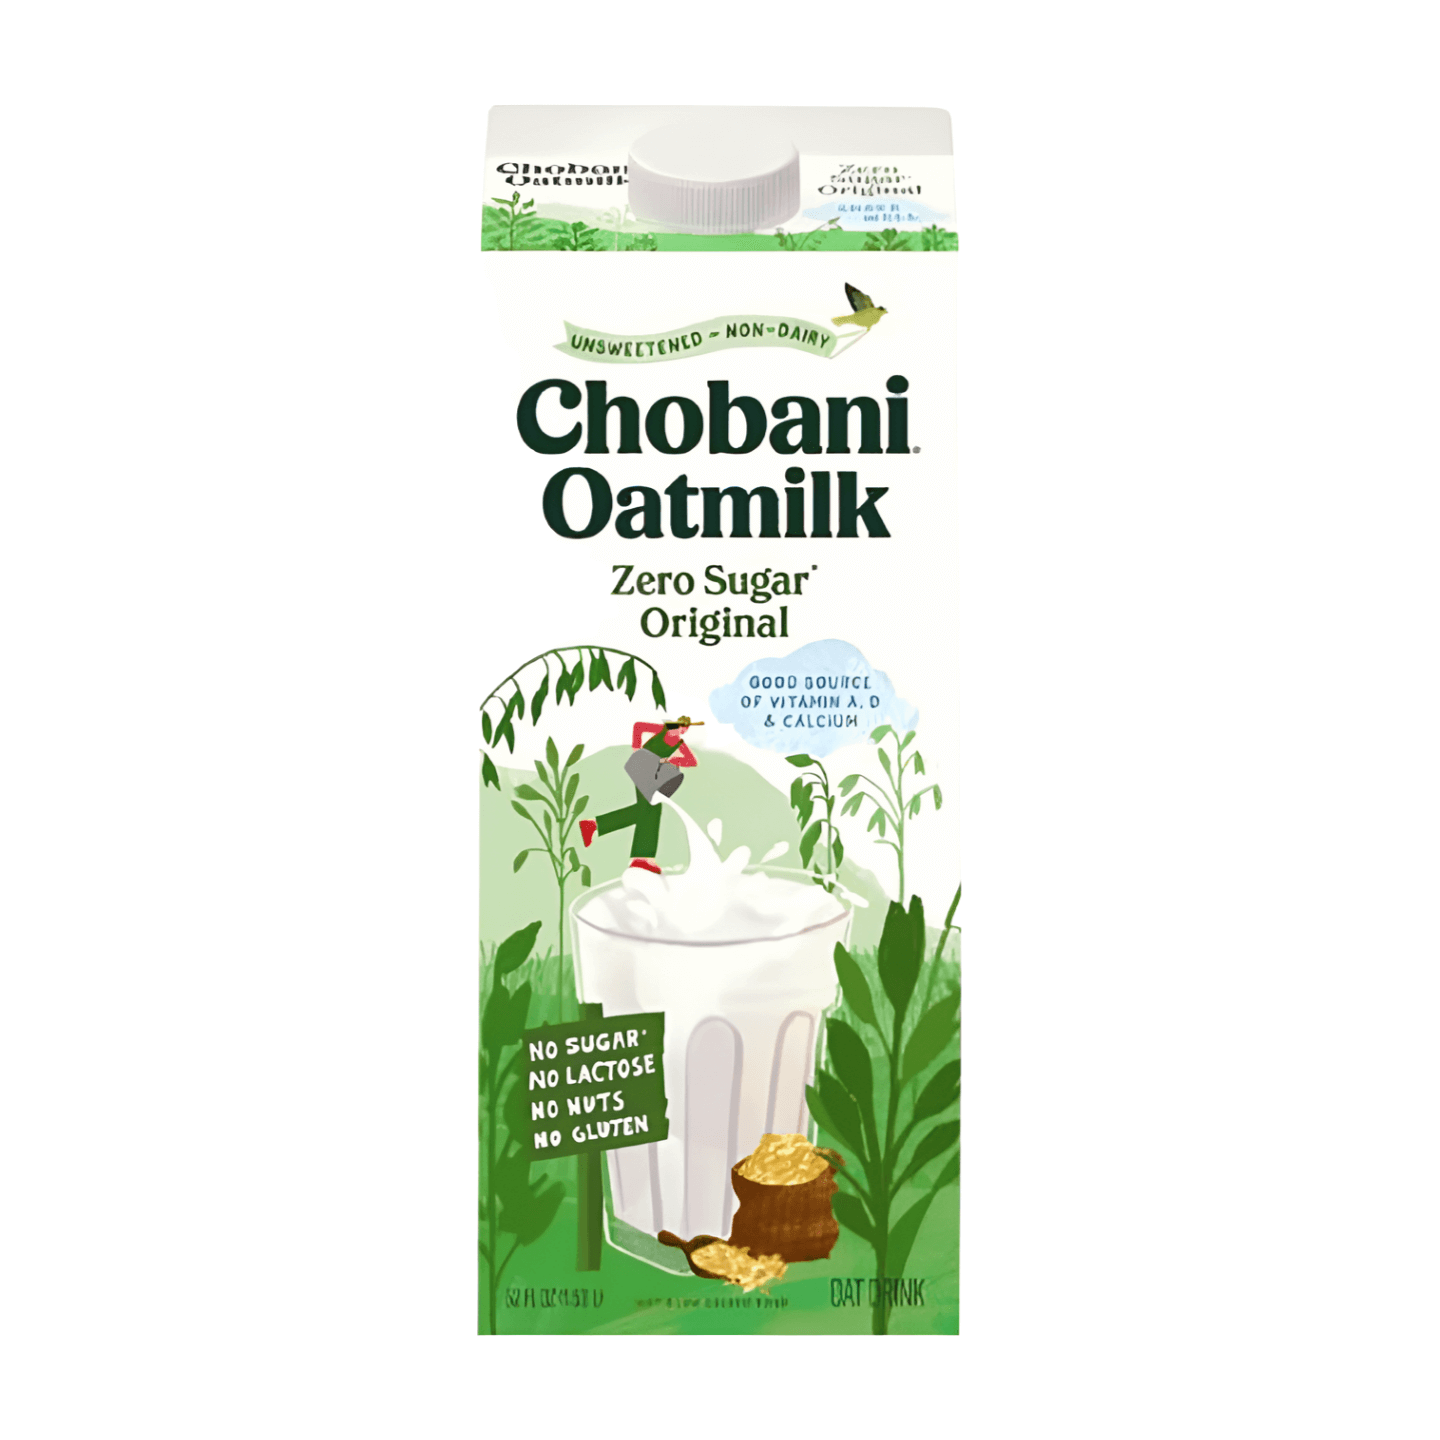 Chobani Oatmilk Zero Sugar Original